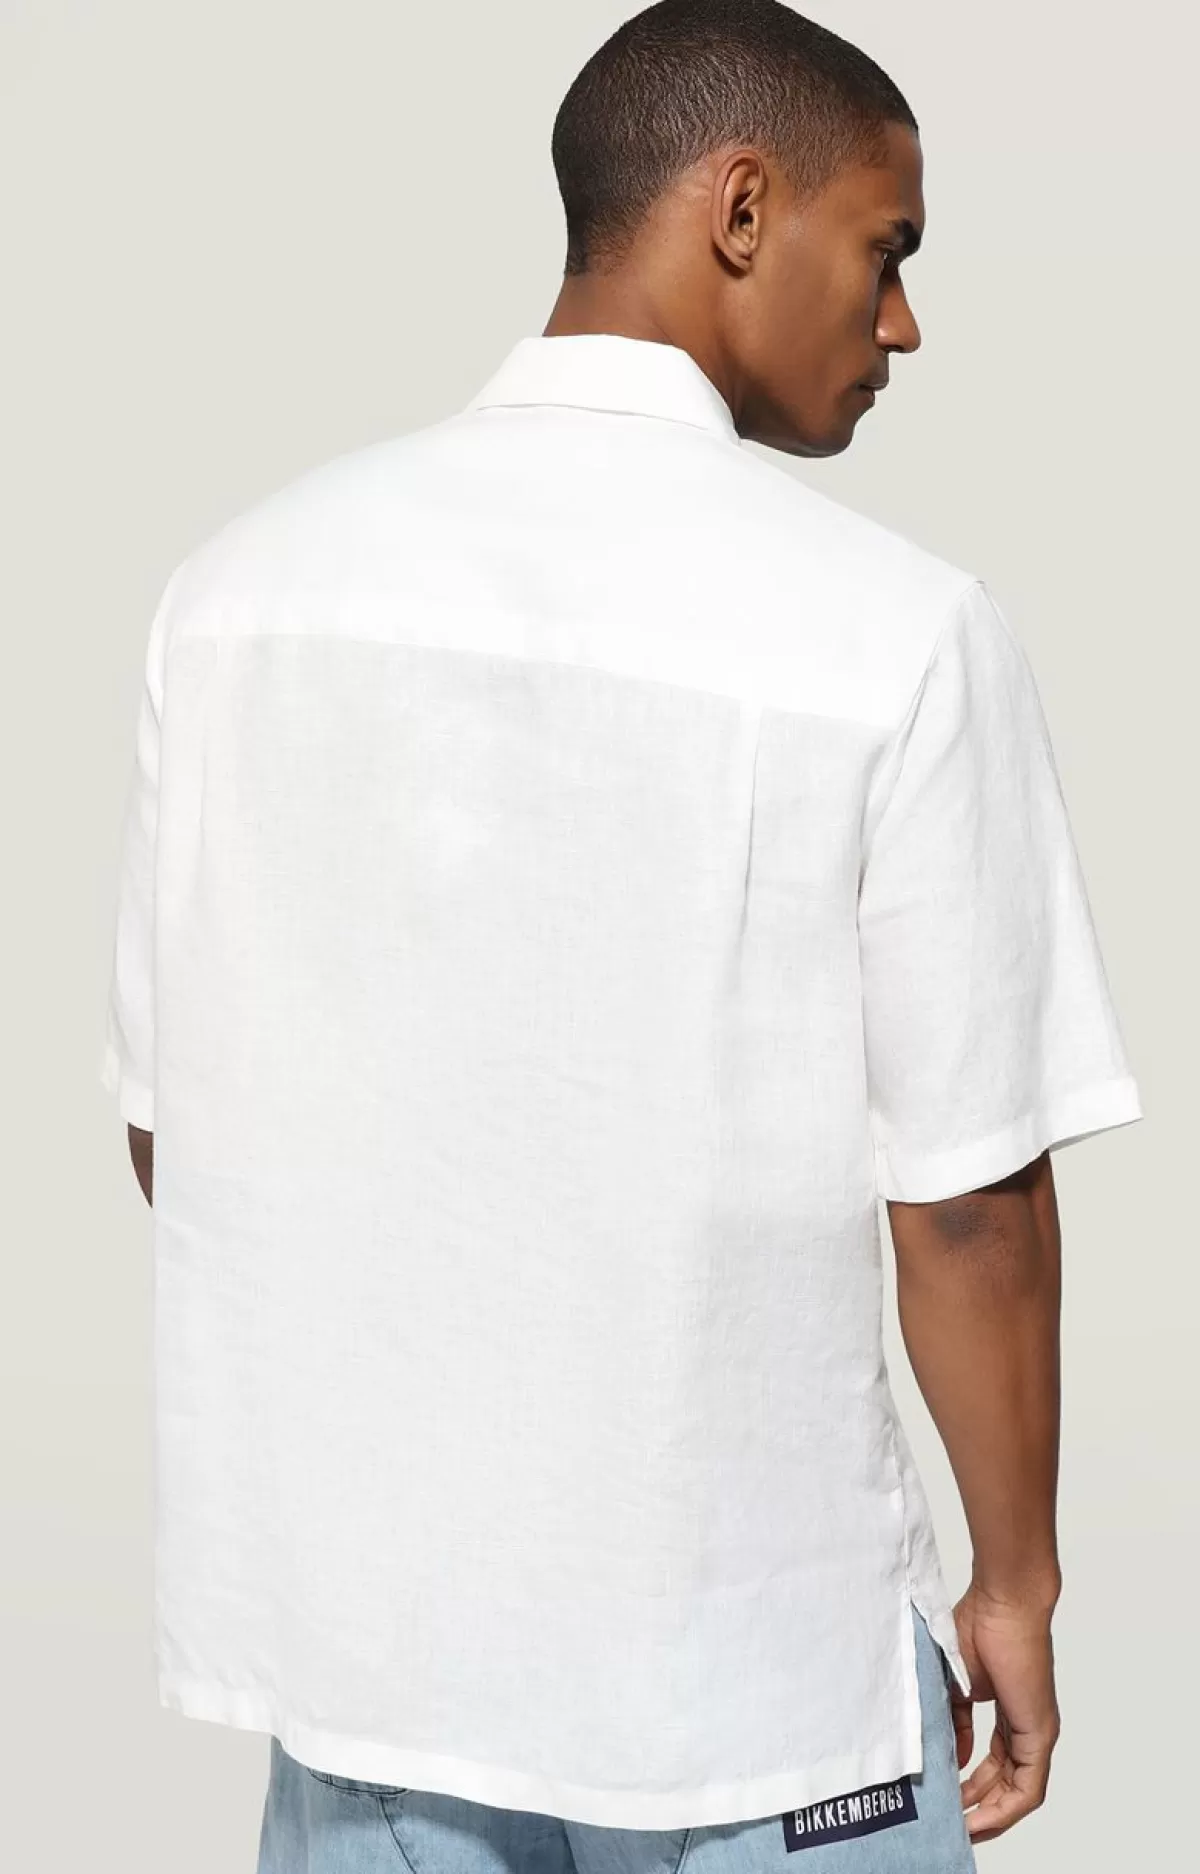 Bikkembergs Men'S Short Sleeve Embroidered Shirt White Best Sale